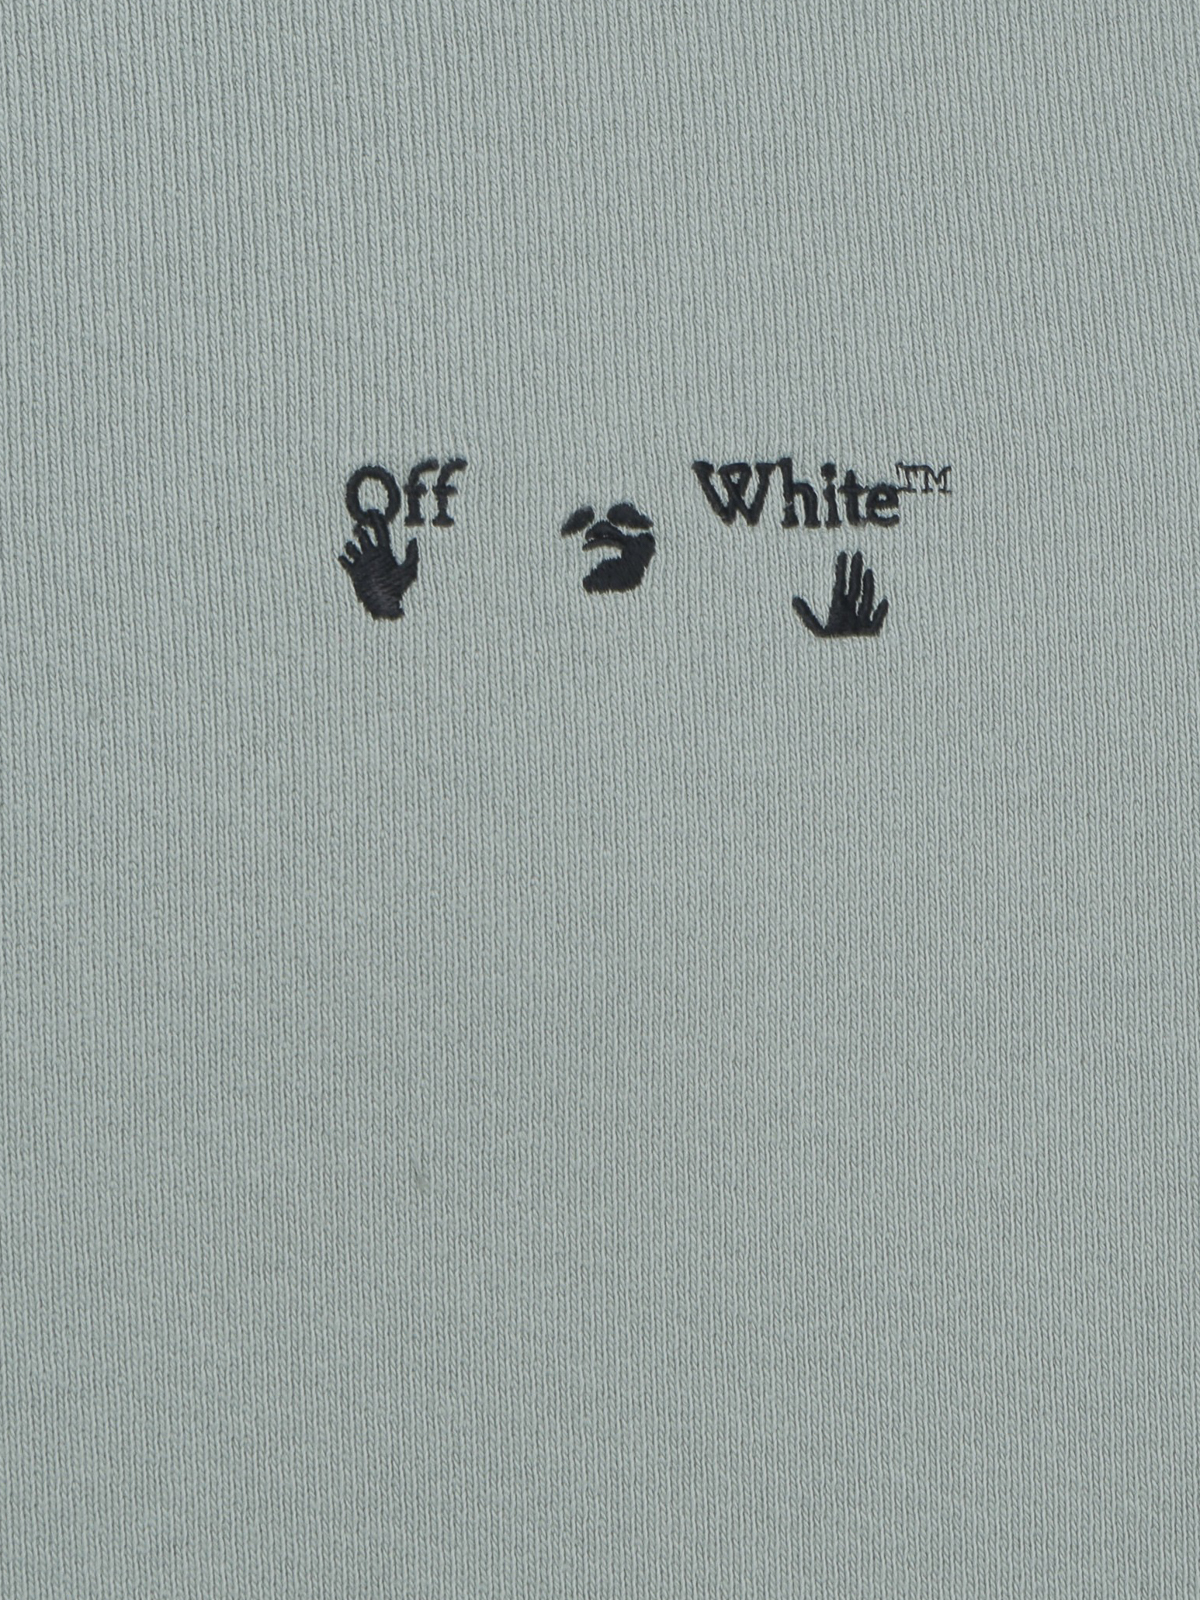 総合ランキング1位 オフホワイト Off White オフホワイト ロゴ スウェットシャツ メンズ Offwhite Swimming Man 待望の再販 Corposervica Gob Ve